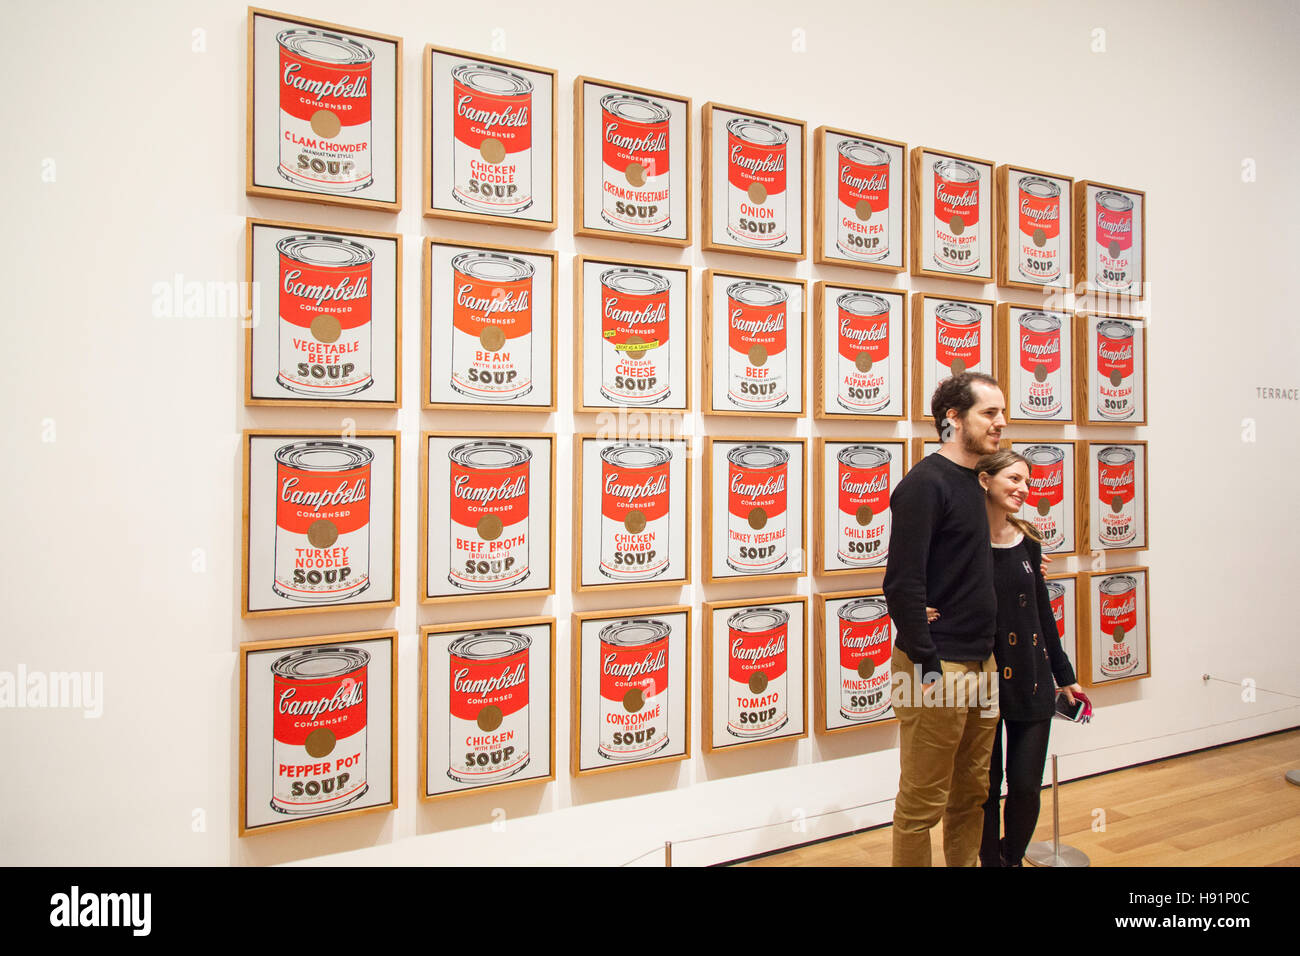 Andy Warhol, Campbell Suppe Dosen Gemälde (1962) MoMa Museum der modernen Kunst, New York City, Vereinigte Staaten von Amerika. Stockfoto